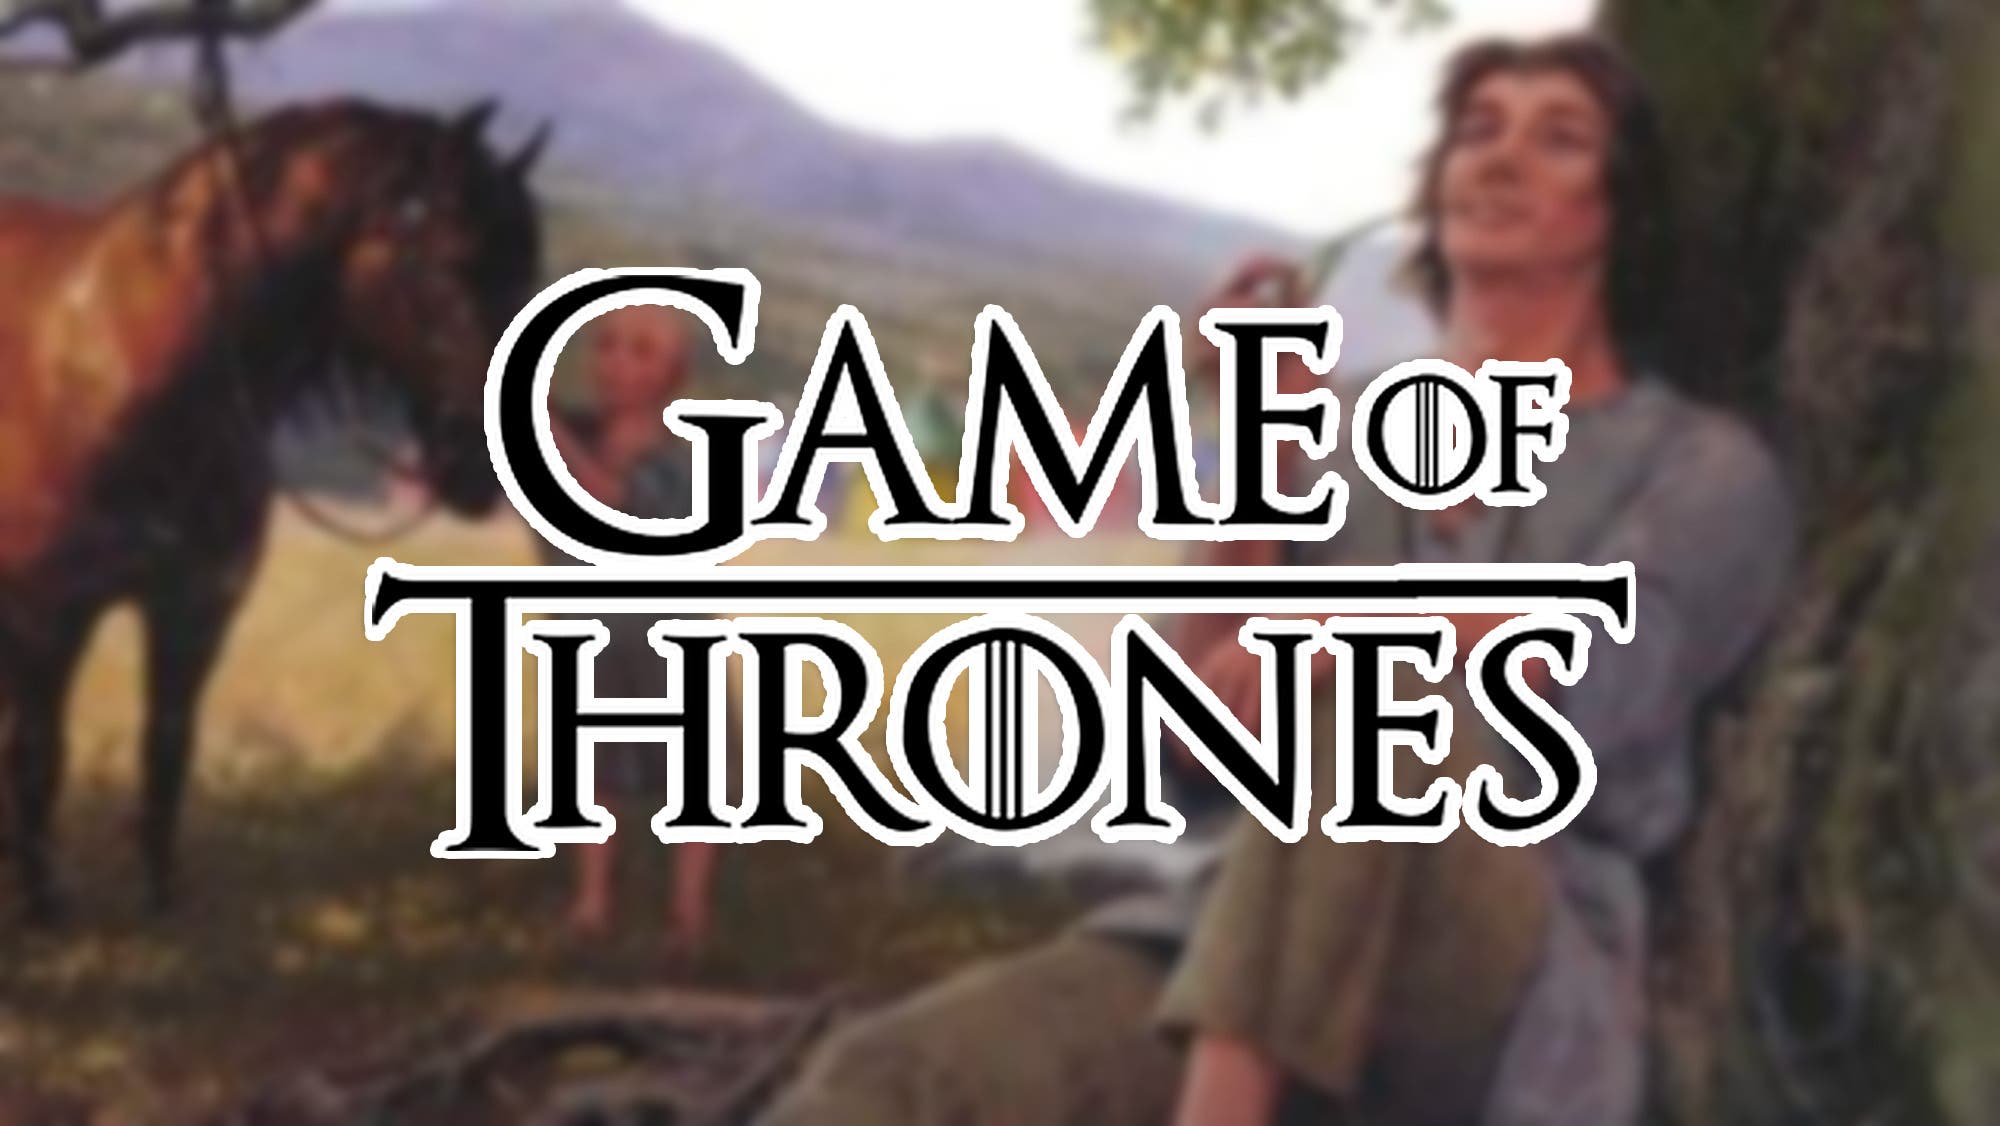 House of the dragon” en HBO Max: Streaming confirma segunda temporada de la  precuela de Game of Thrones, Ver Casa del Dragon online, Cine y series